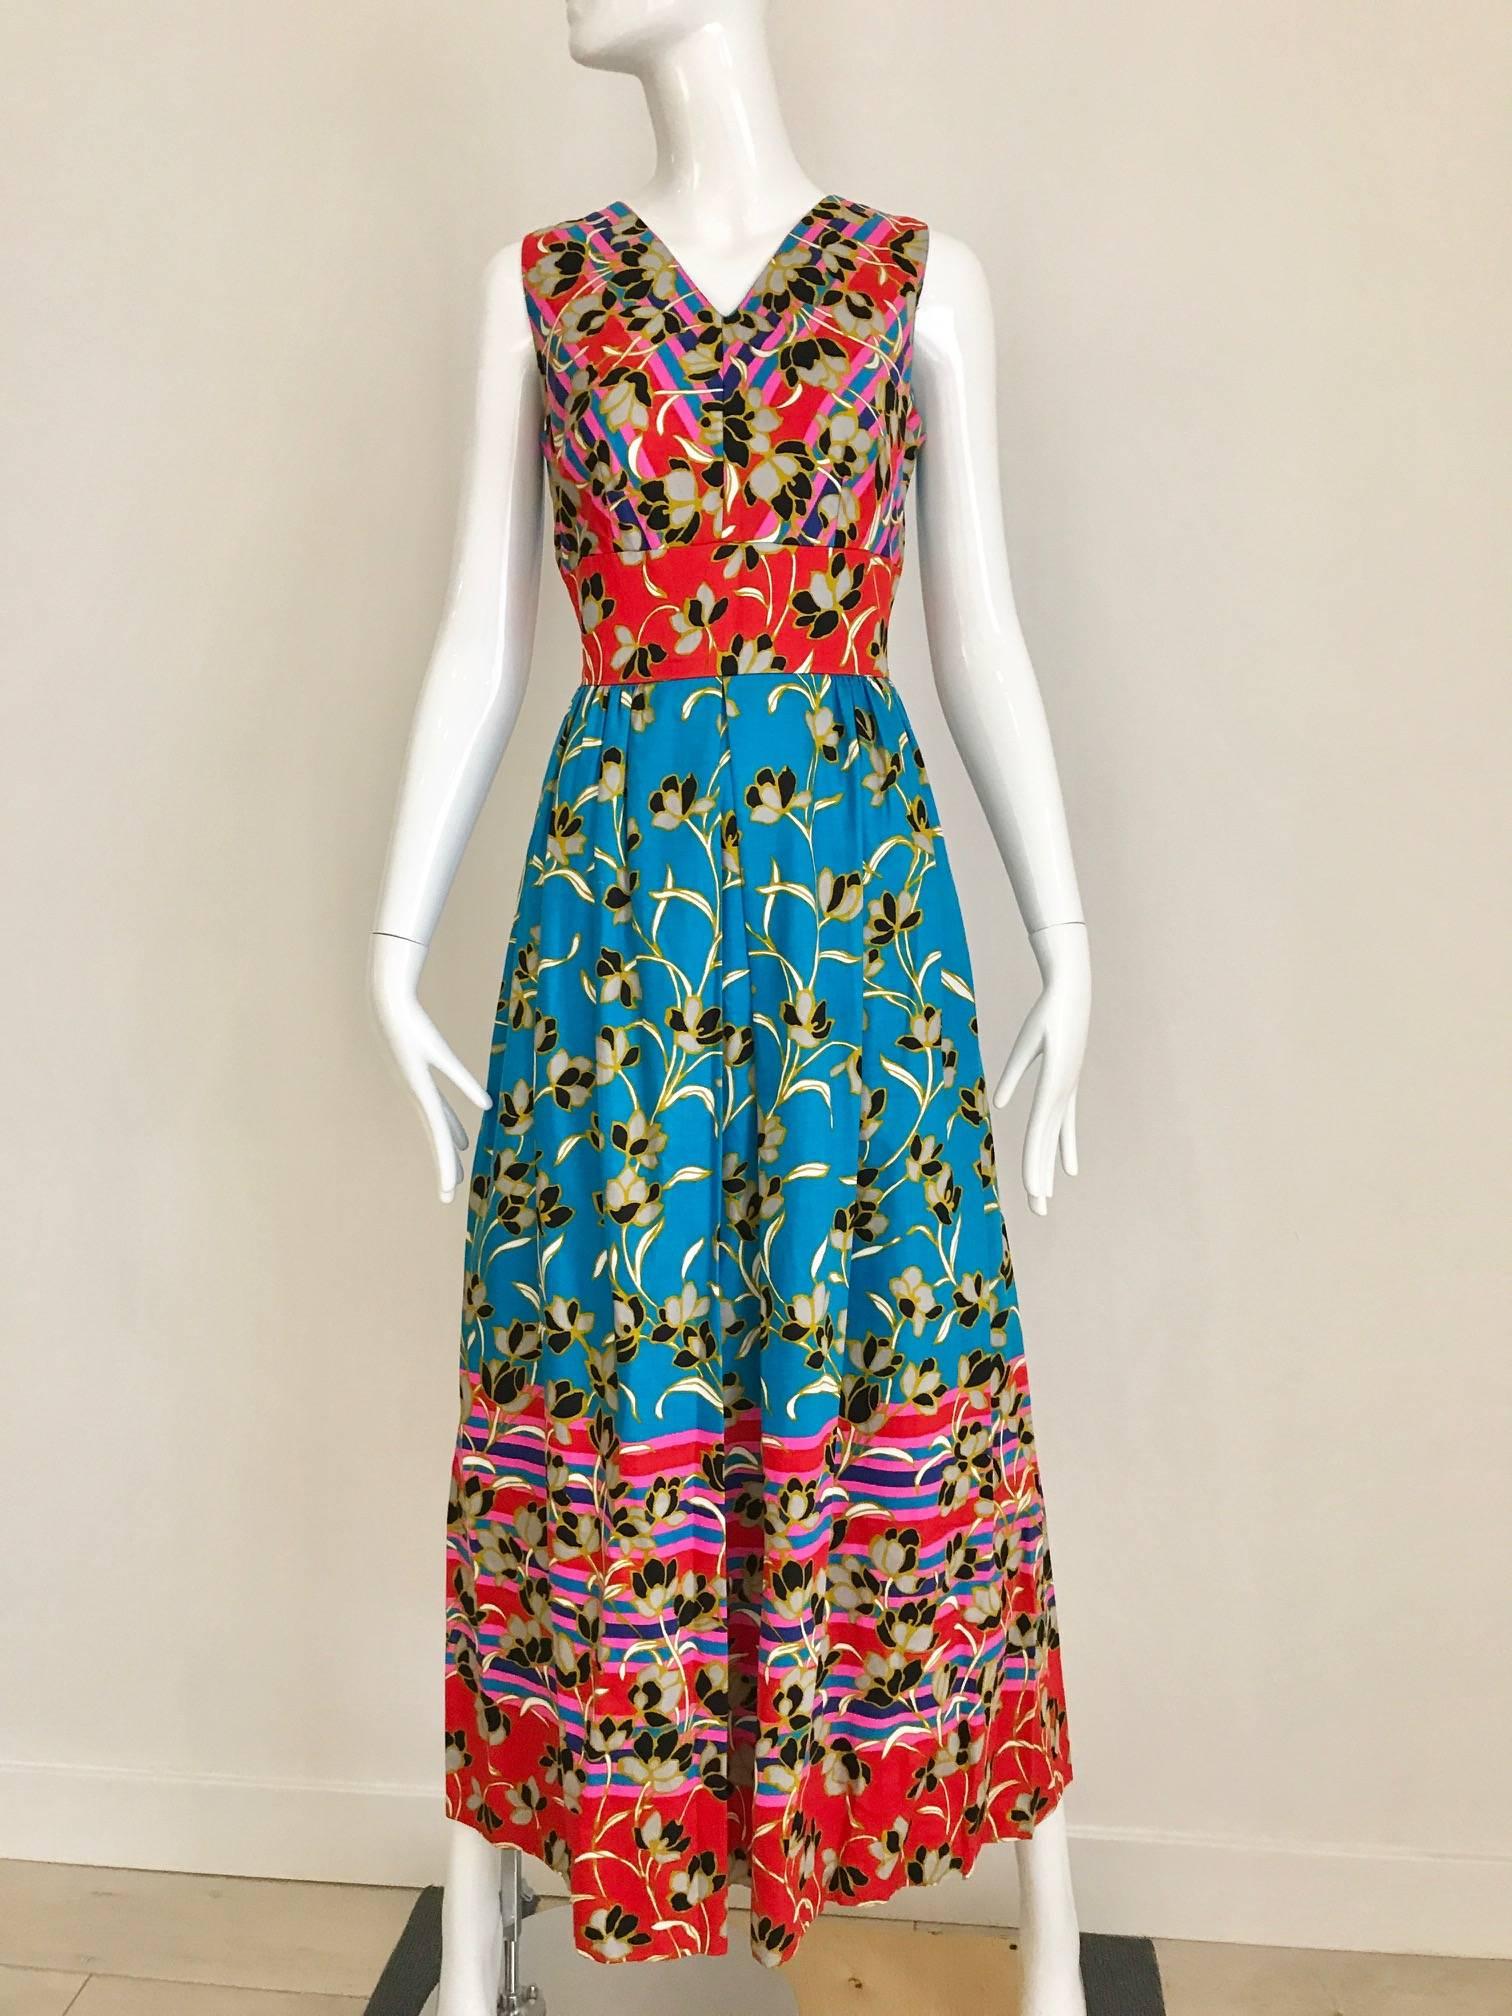 Women's 1970s Floral Print Cotton Sleeveless Summer Dress